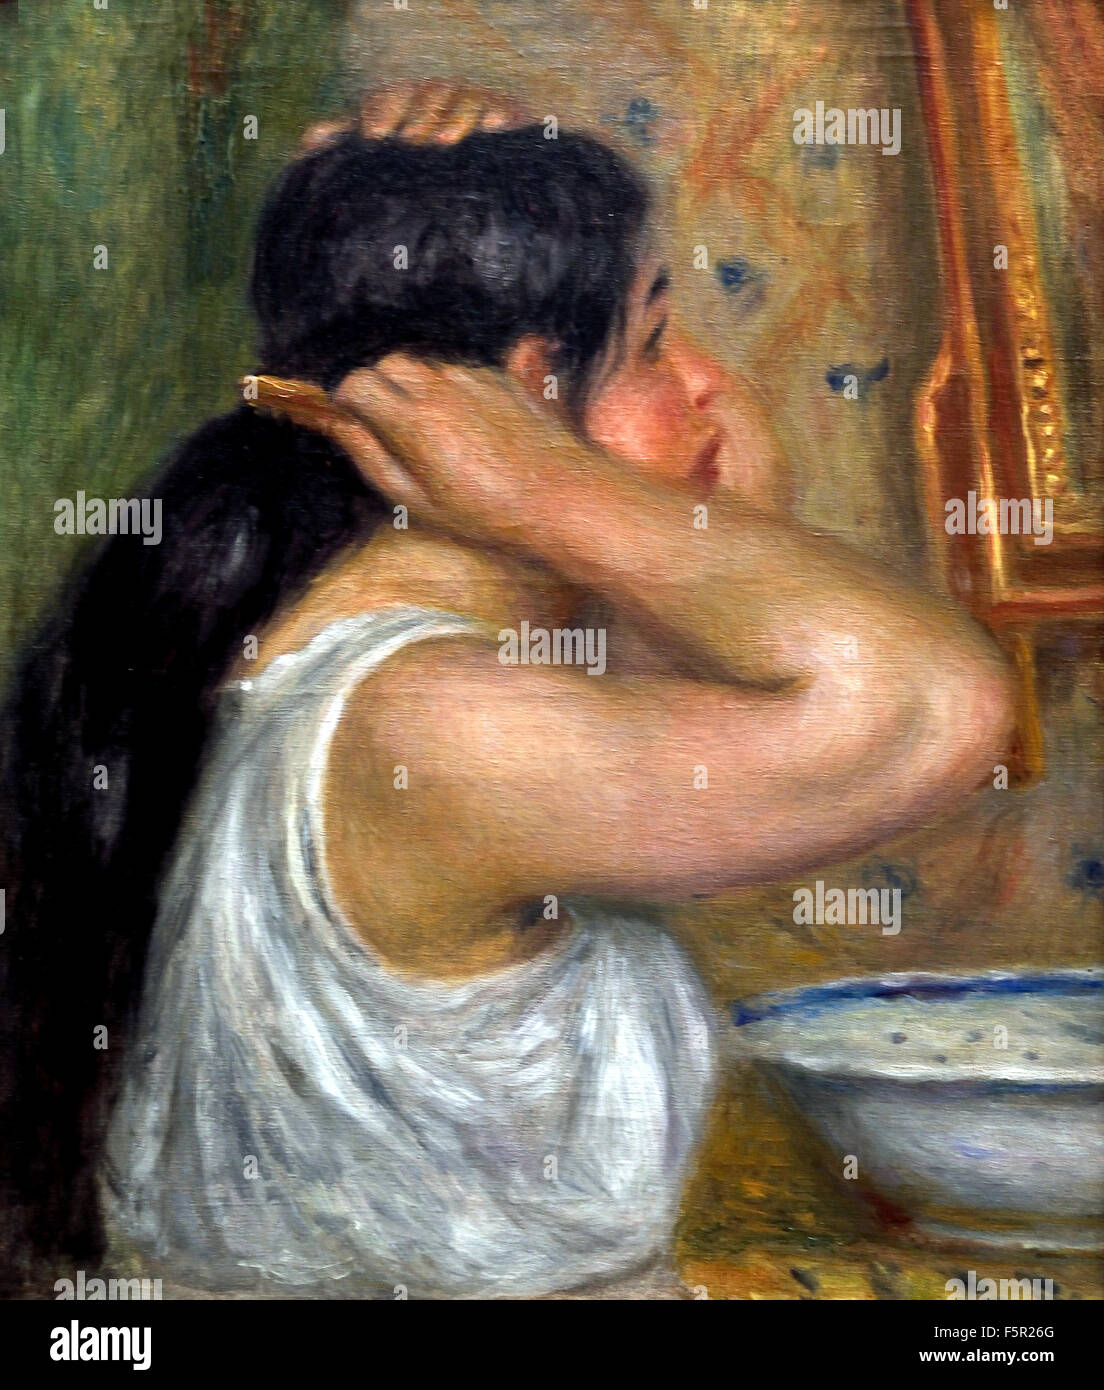 La toilette : femme se peignant - The toilet: woman painting 1907 - 1908  Pierre Auguste Renoir 1841-1919 French Impressionist France Stock Photo